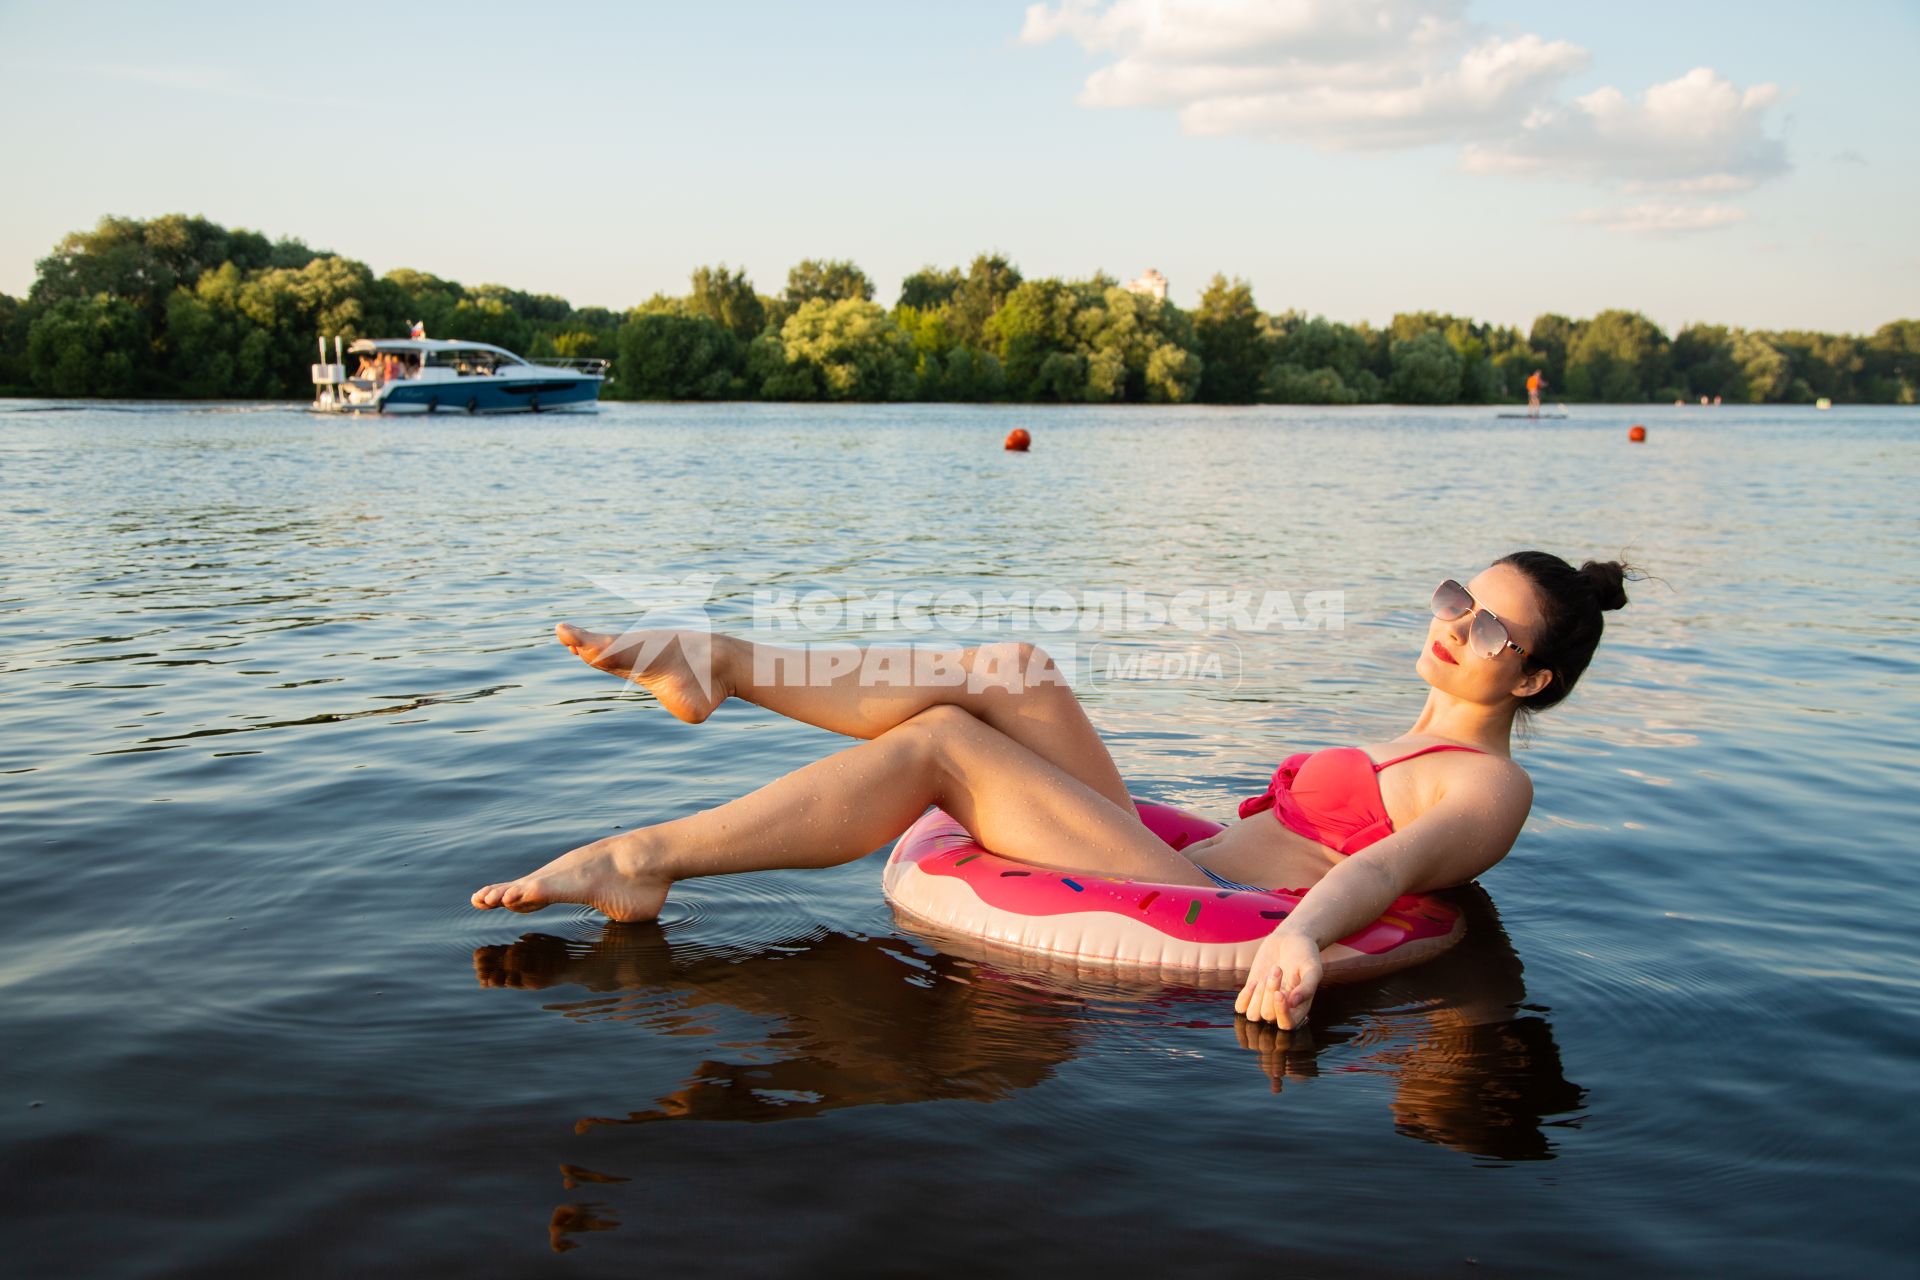 Москва. Девушка плавает на надувном круге в виде пончика на пляже Серебряный бор № 2.